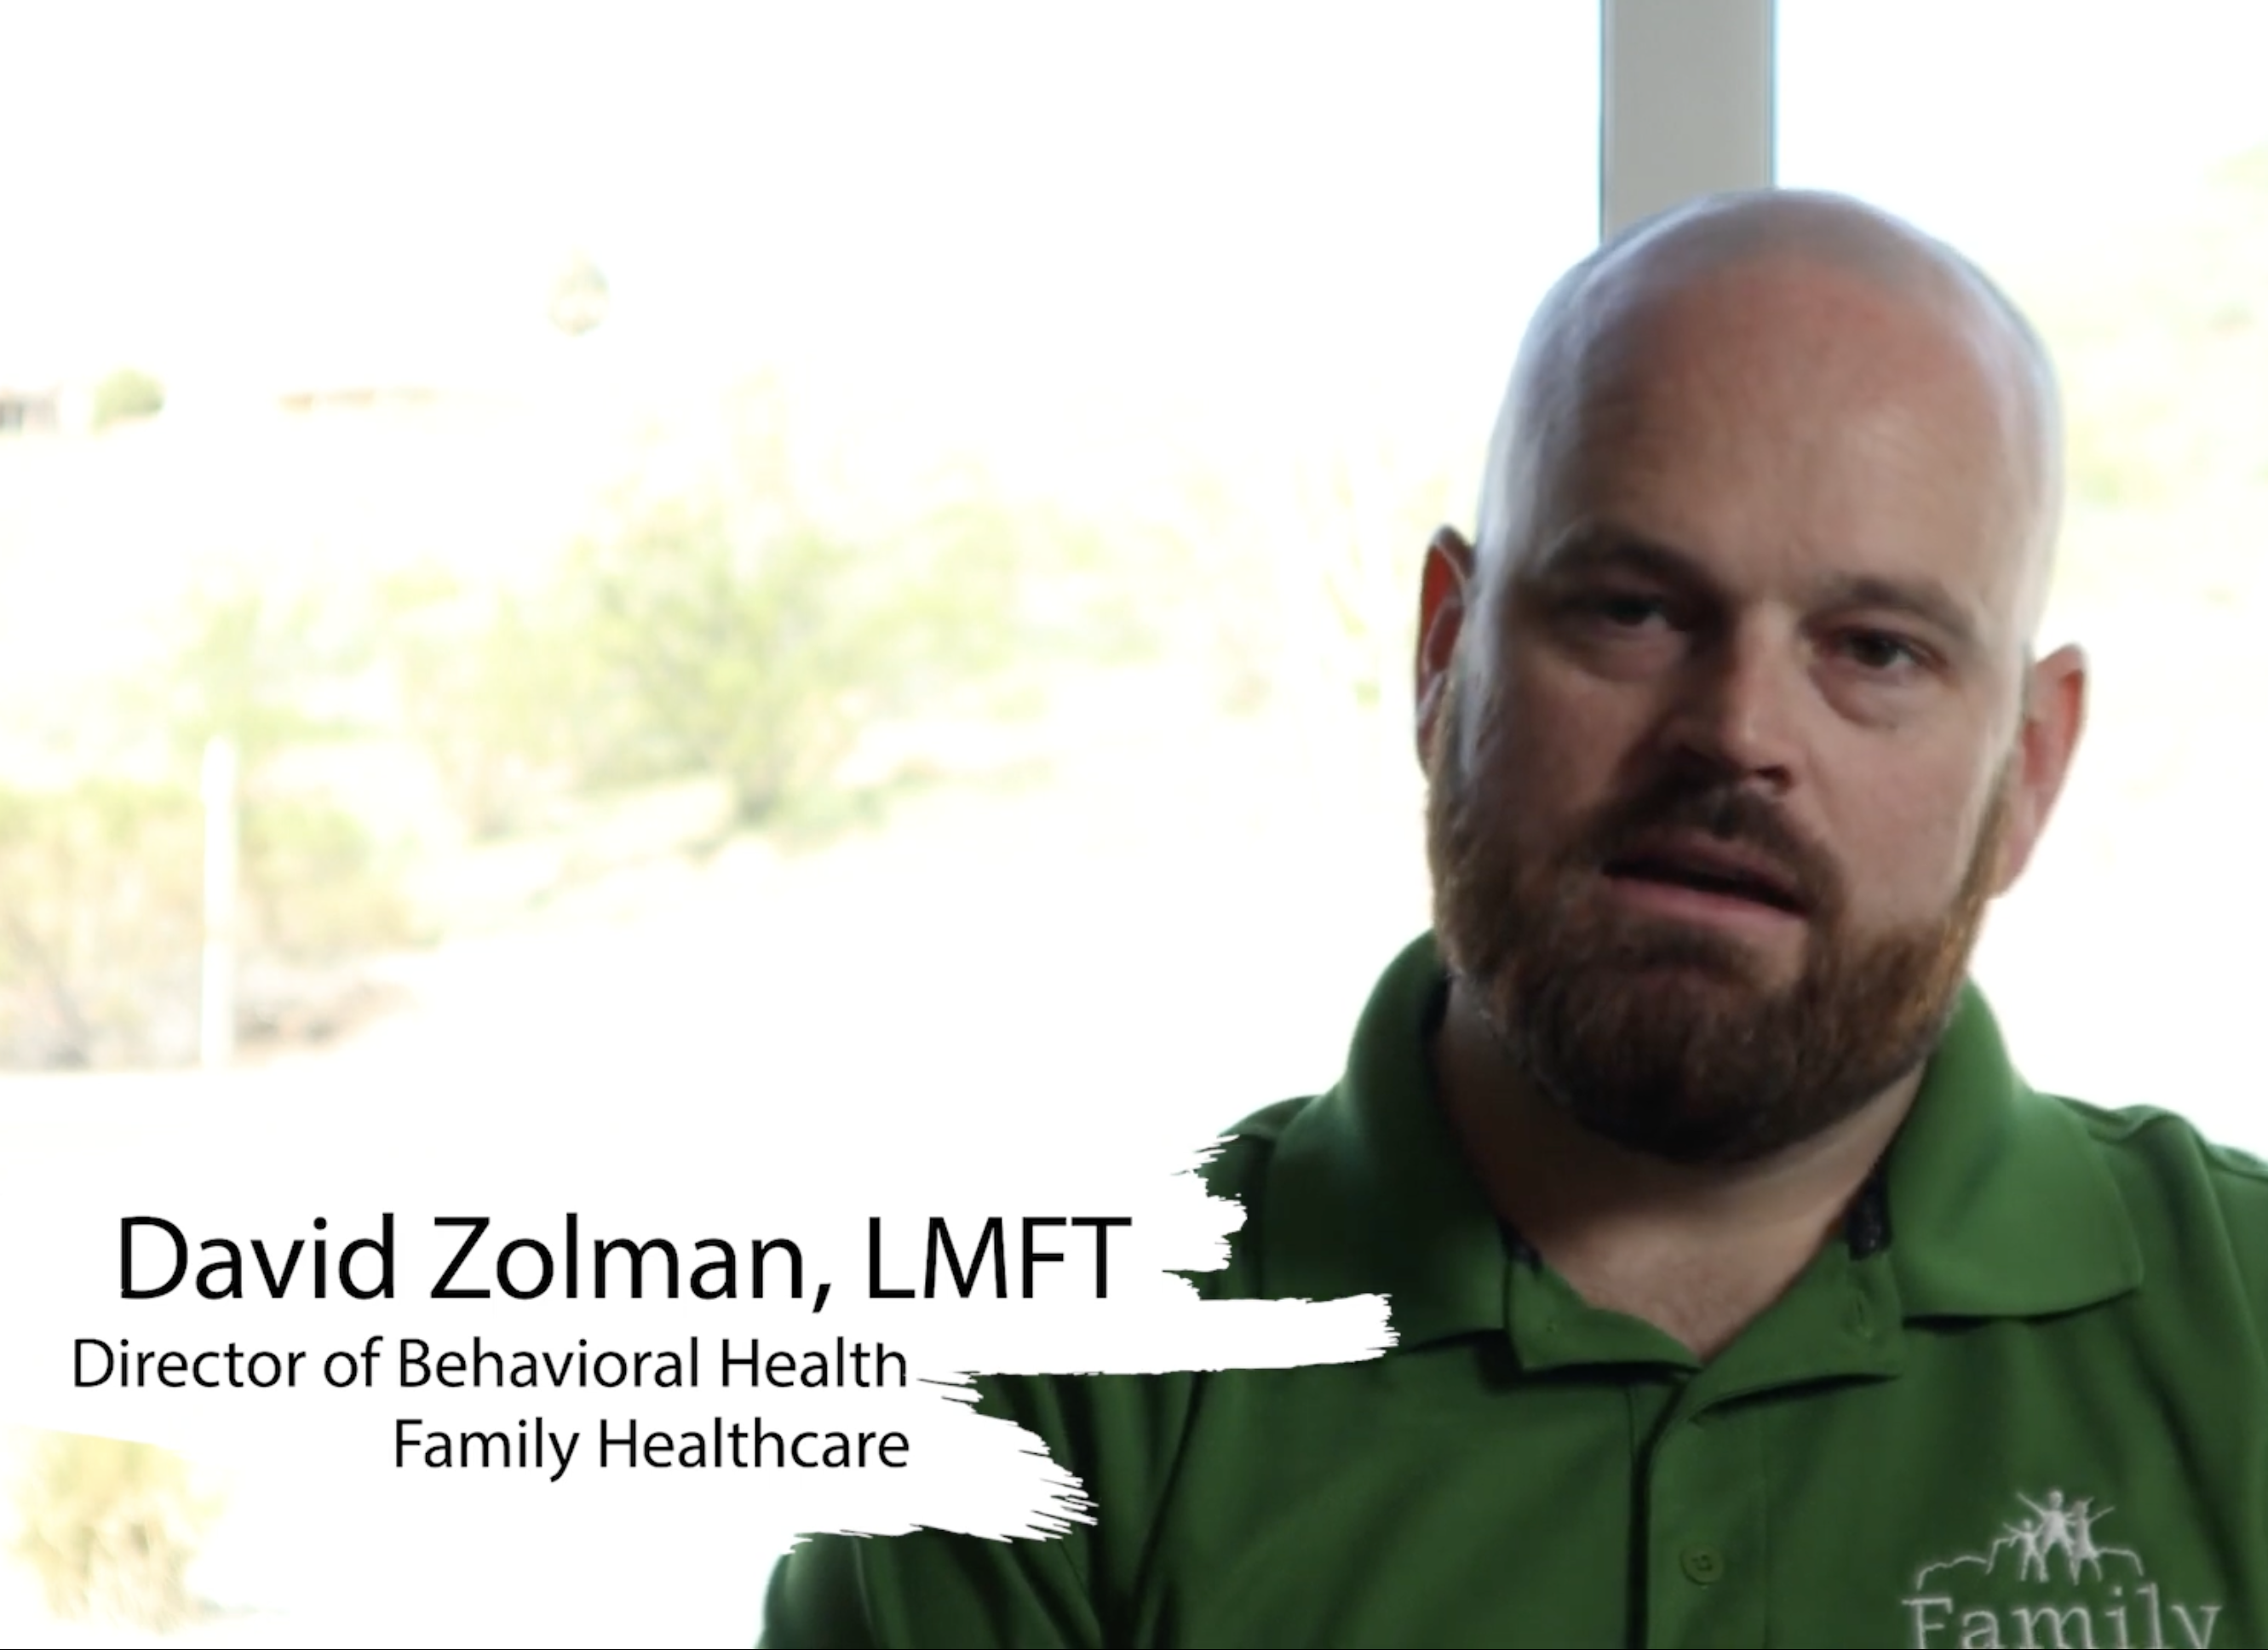 David Zolman, LMFT. Director of Behavioral Health Family Healthcare.